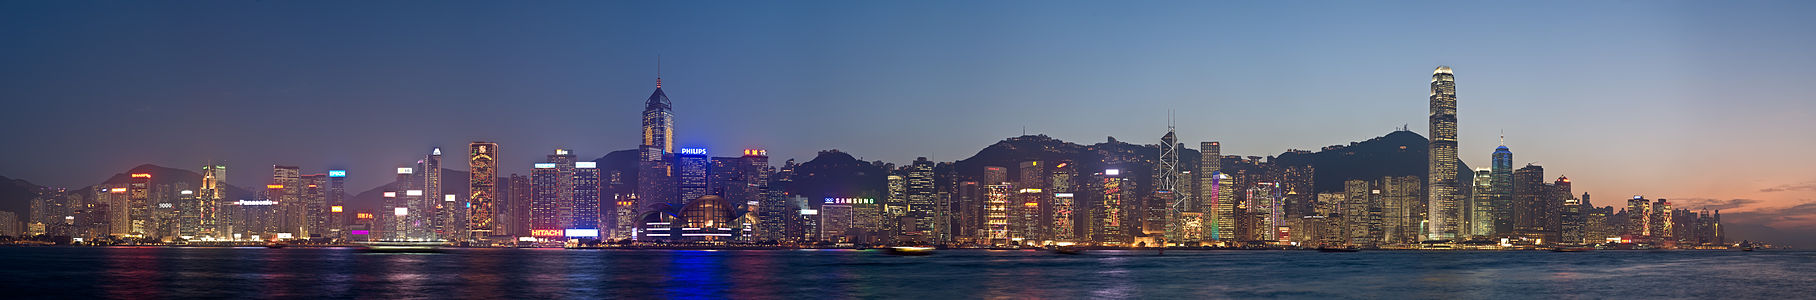 Hong Kong şehir merkezi. Aralık ayına özgü Noel ışıklandırmaları dikkat çekmektedir (10 Aralık 2008). (Üreten: Diliff)